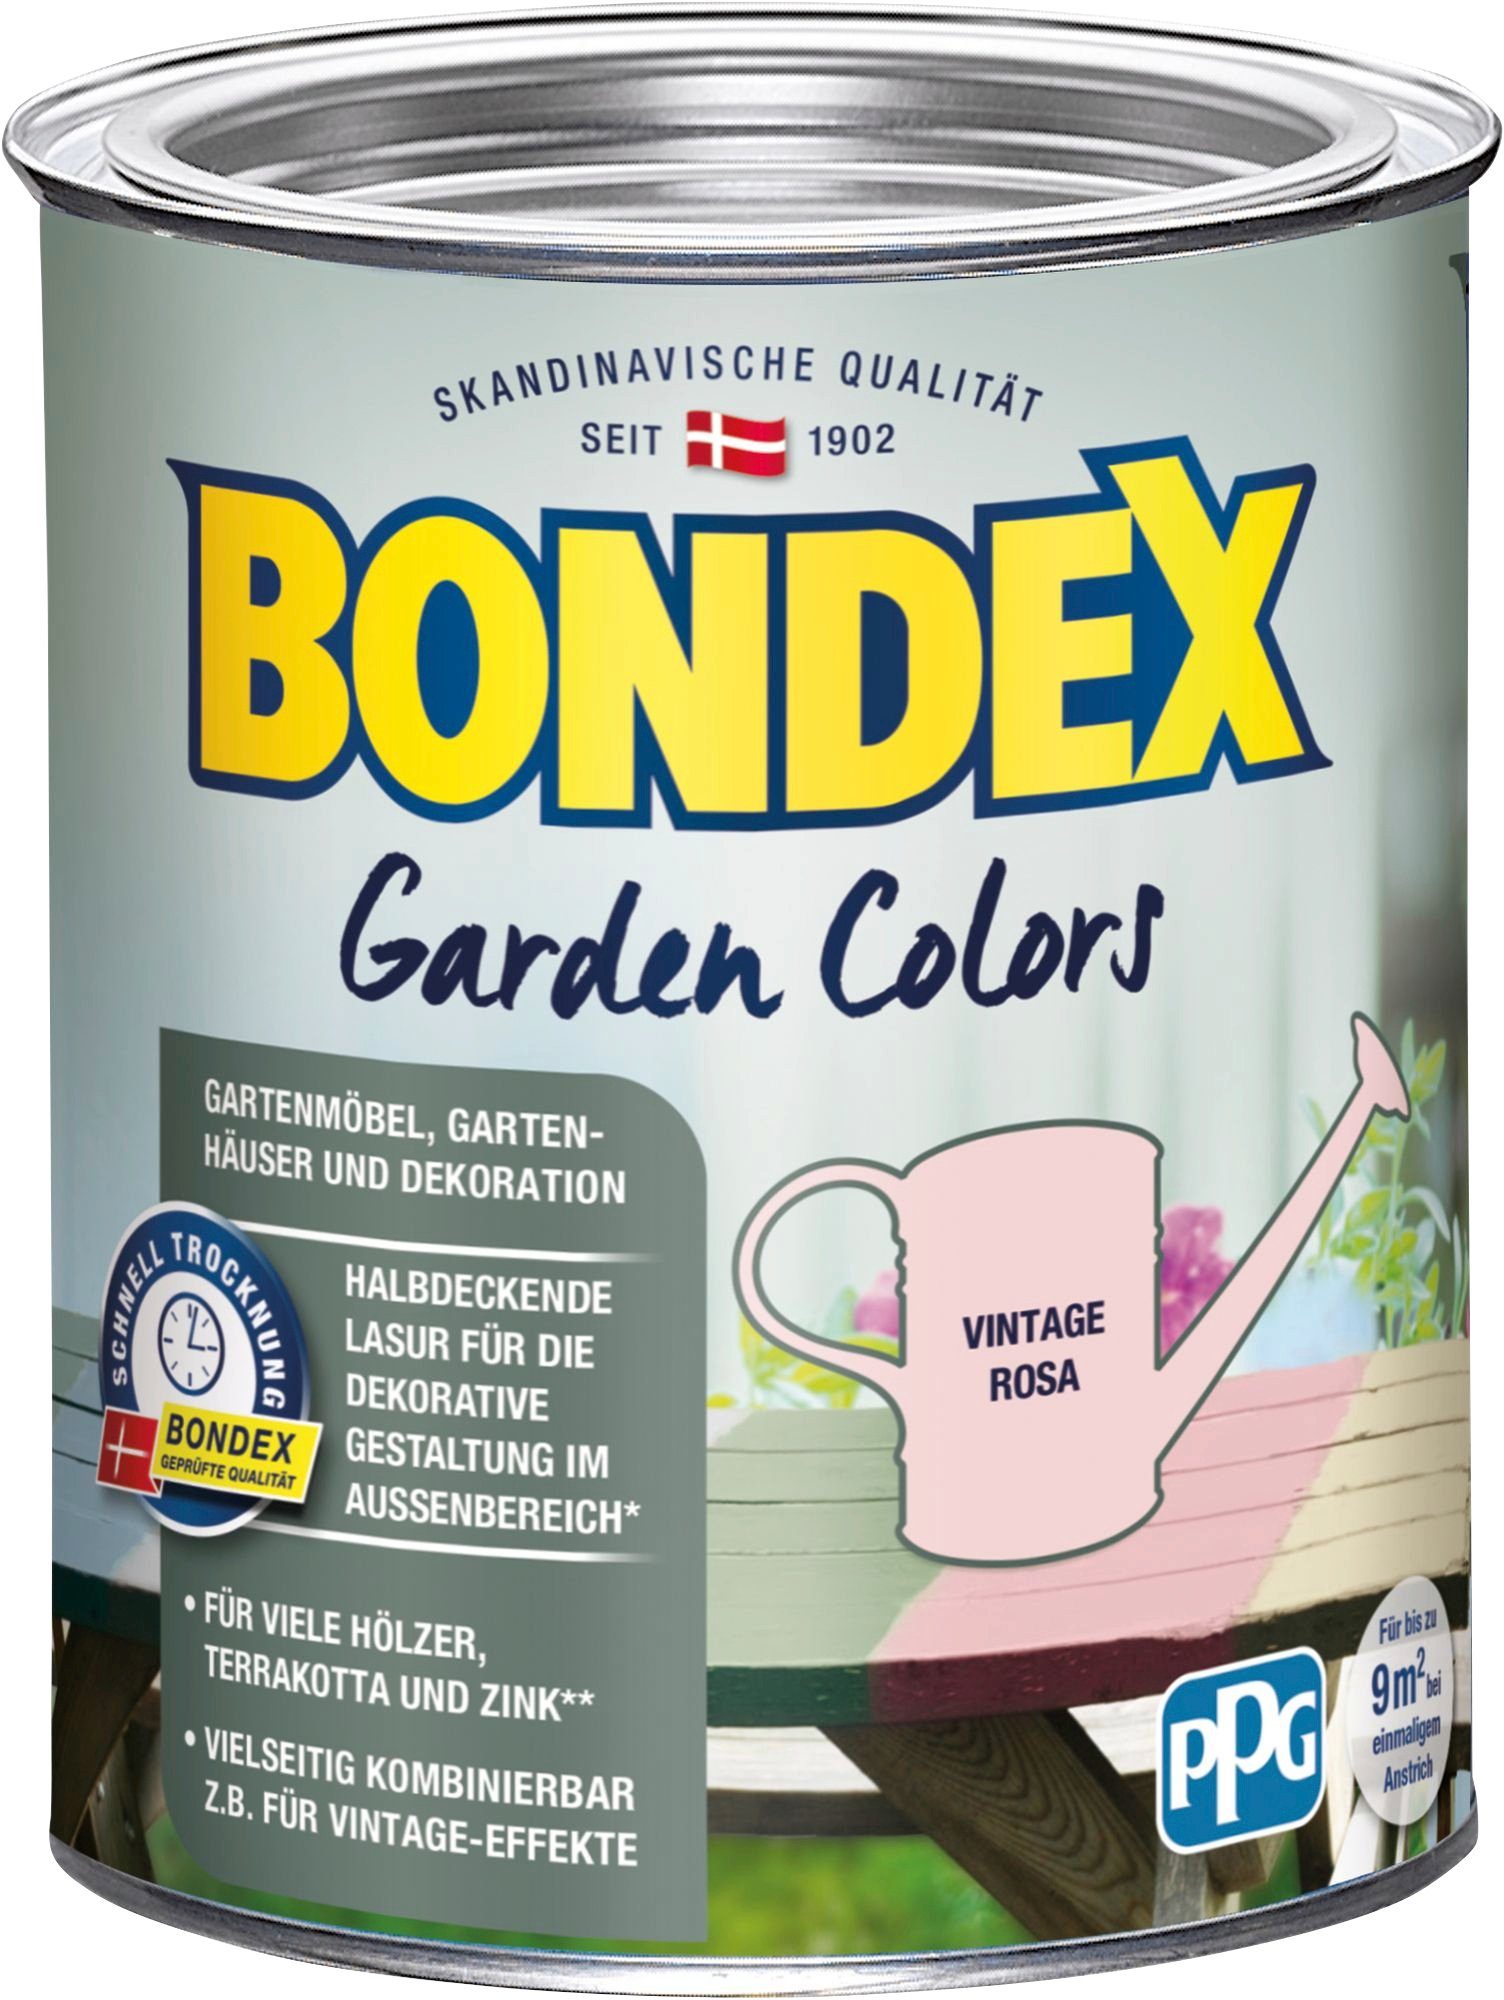 Bondex Wetterschutzfarbe GARDEN COLORS, Behagliches 0,75 Rosa Grün, Vintage Liter Inhalt